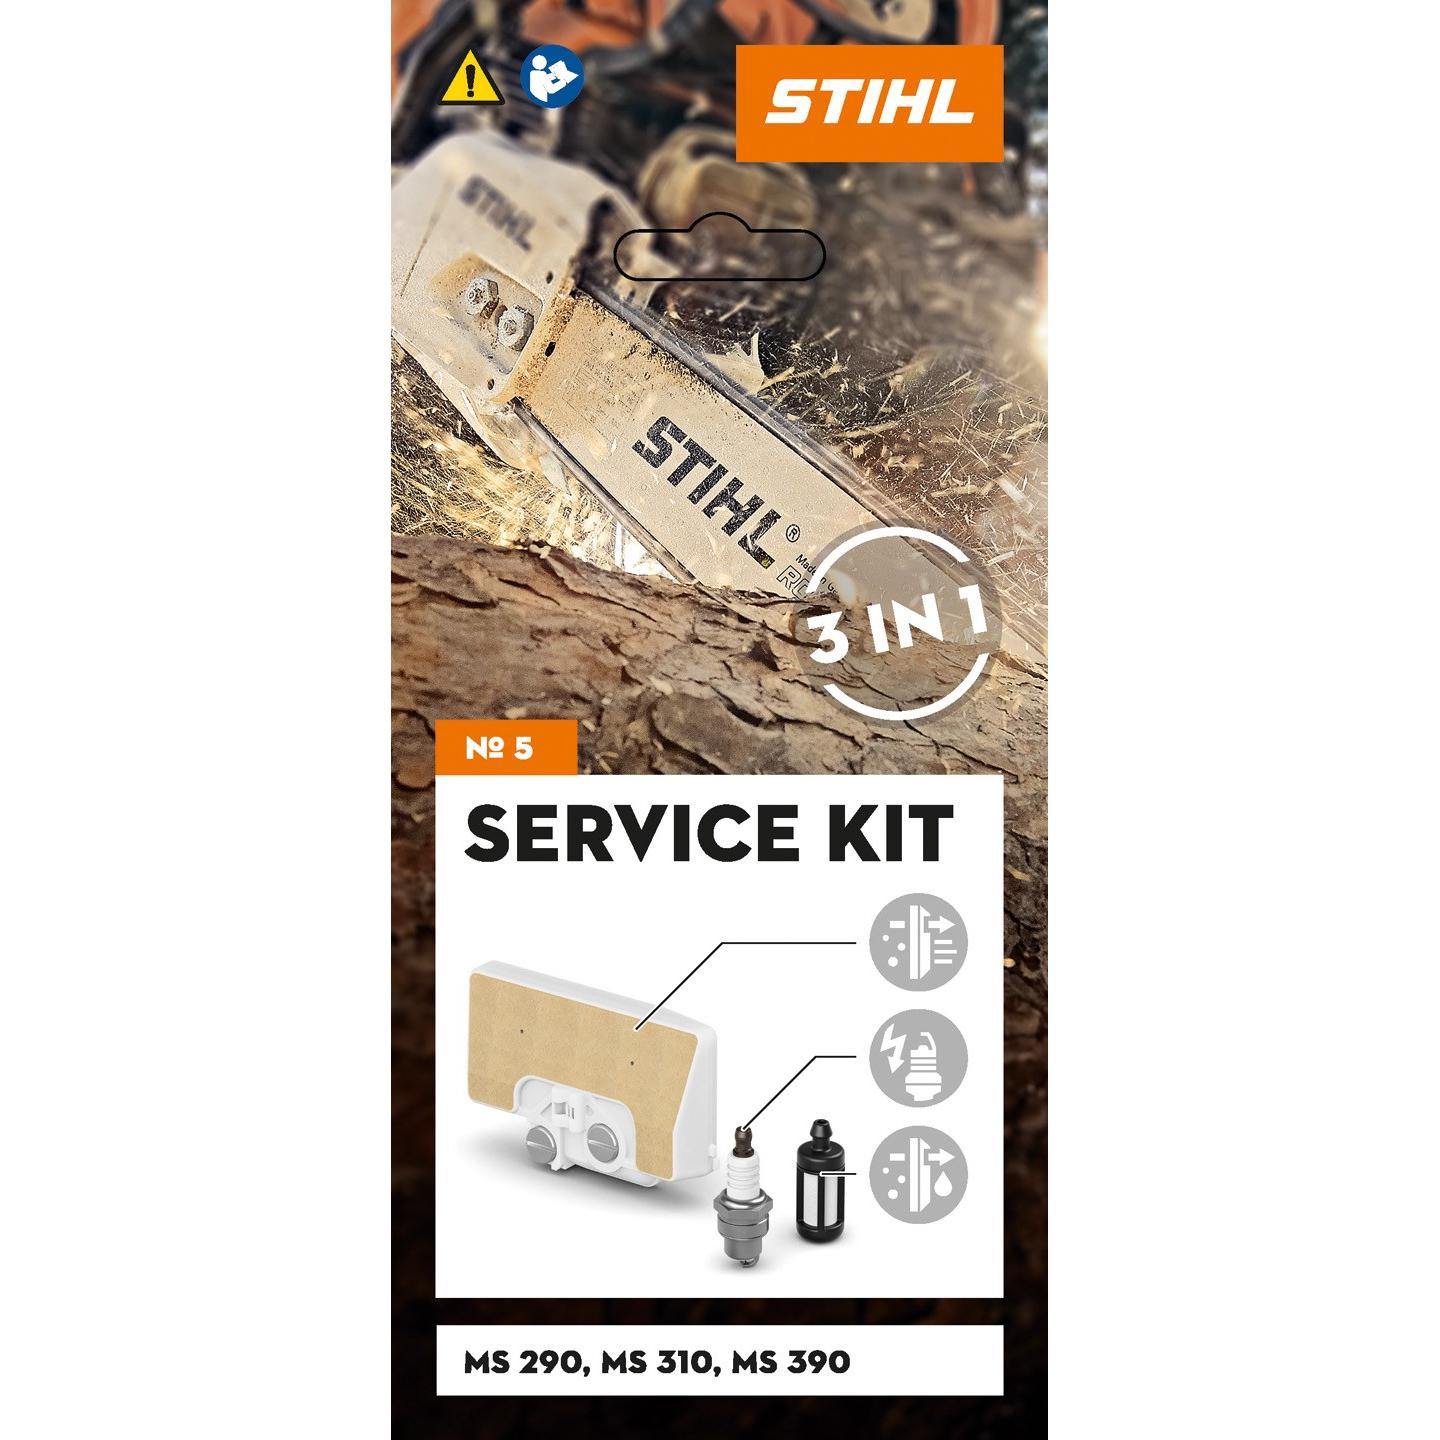 Service Kit for MS290/MS310 (No.5) Stihl-Chainsaw Accessories-STIHL-diyshop.co.za